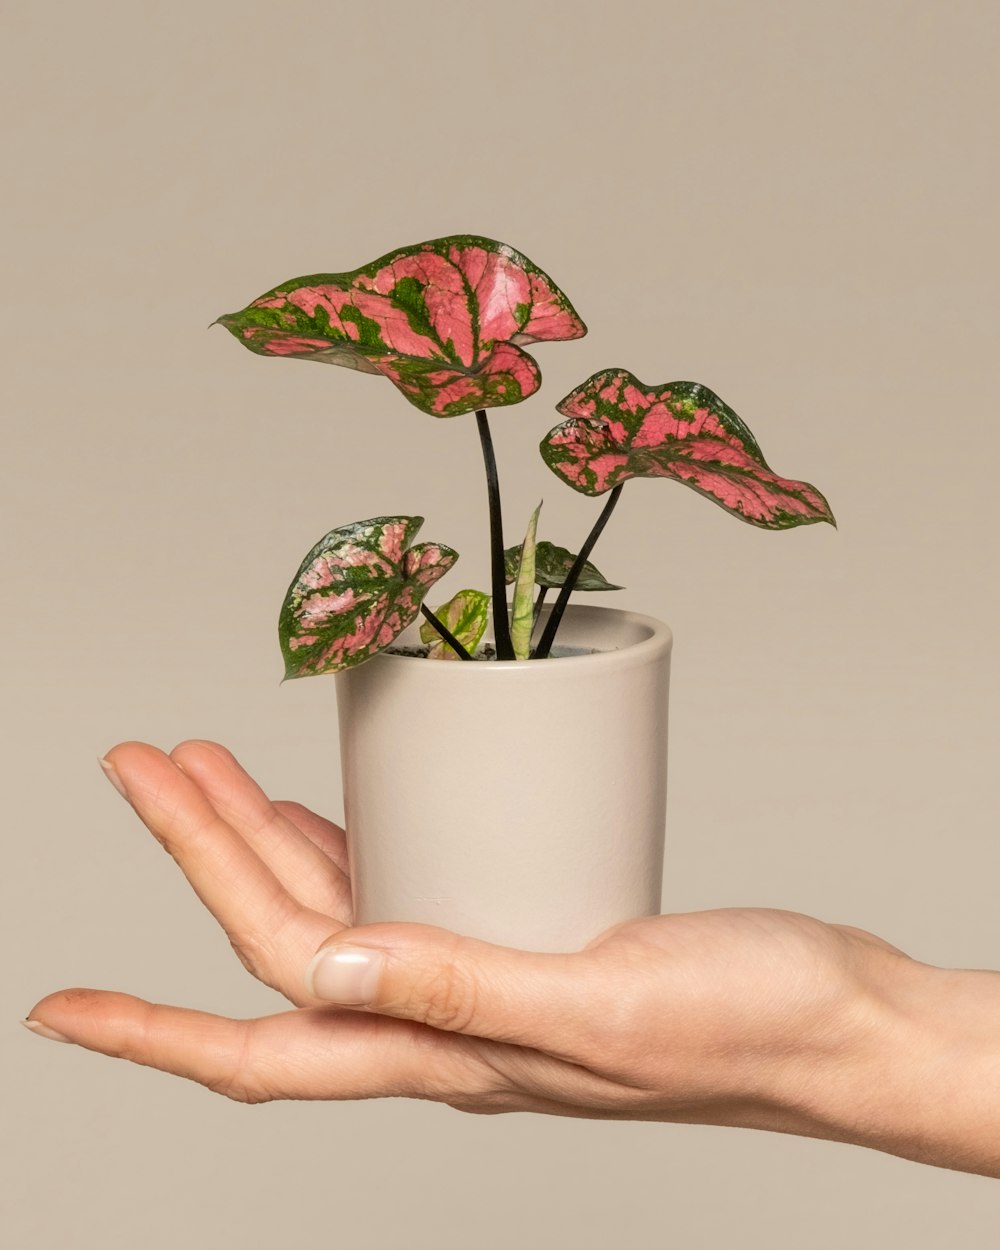 una mano sosteniendo una planta en maceta con flores rosas